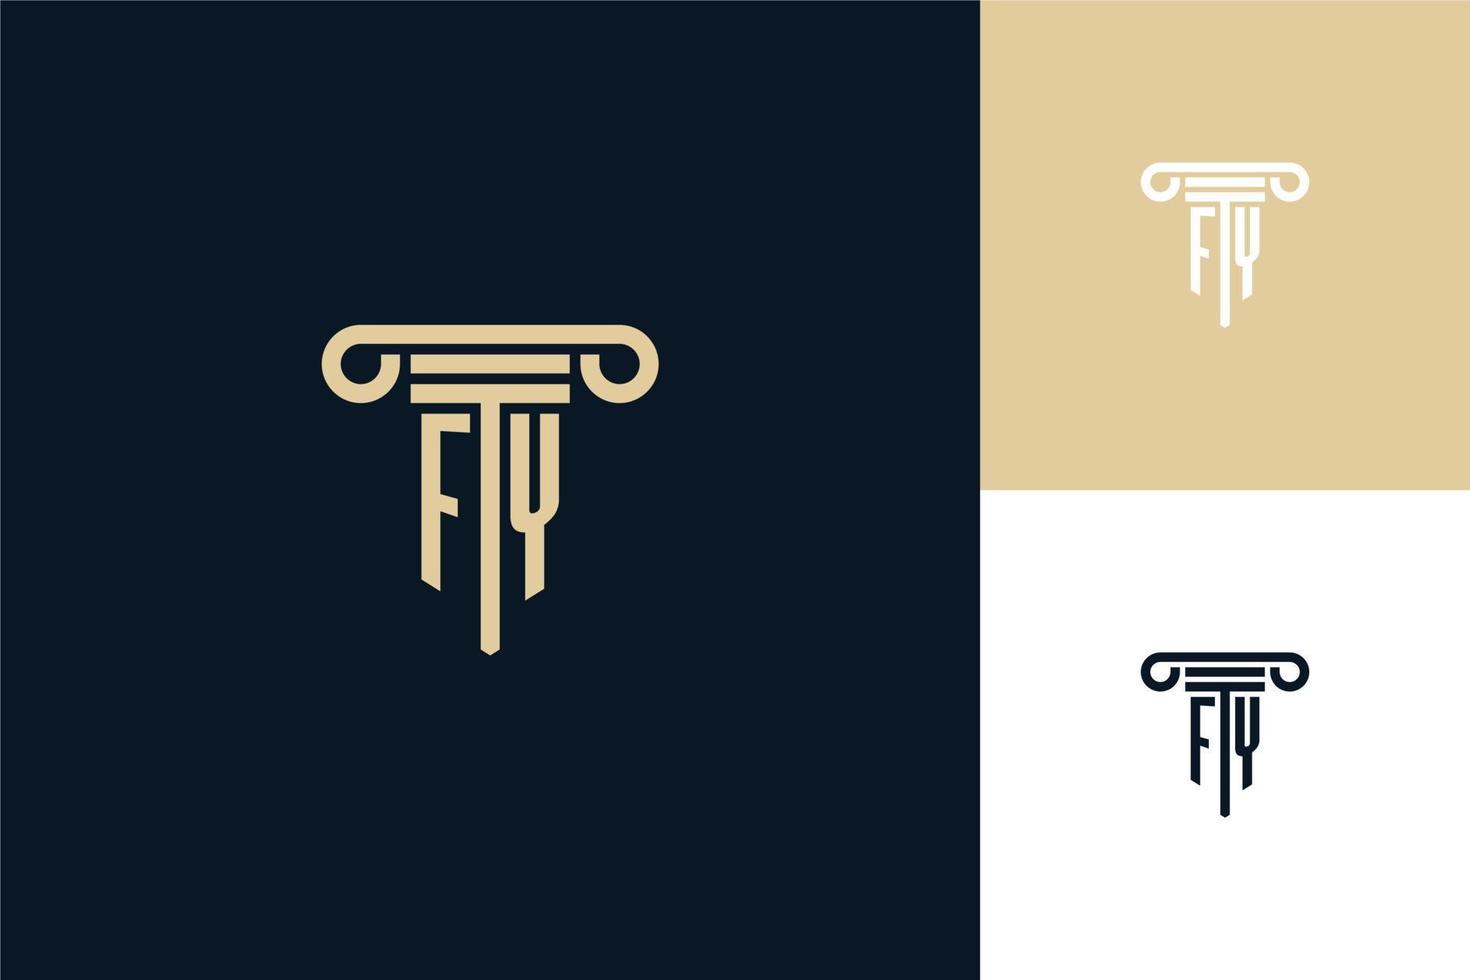 fy monogram initialen ontwerp logo. advocaat logo ontwerpideeën vector